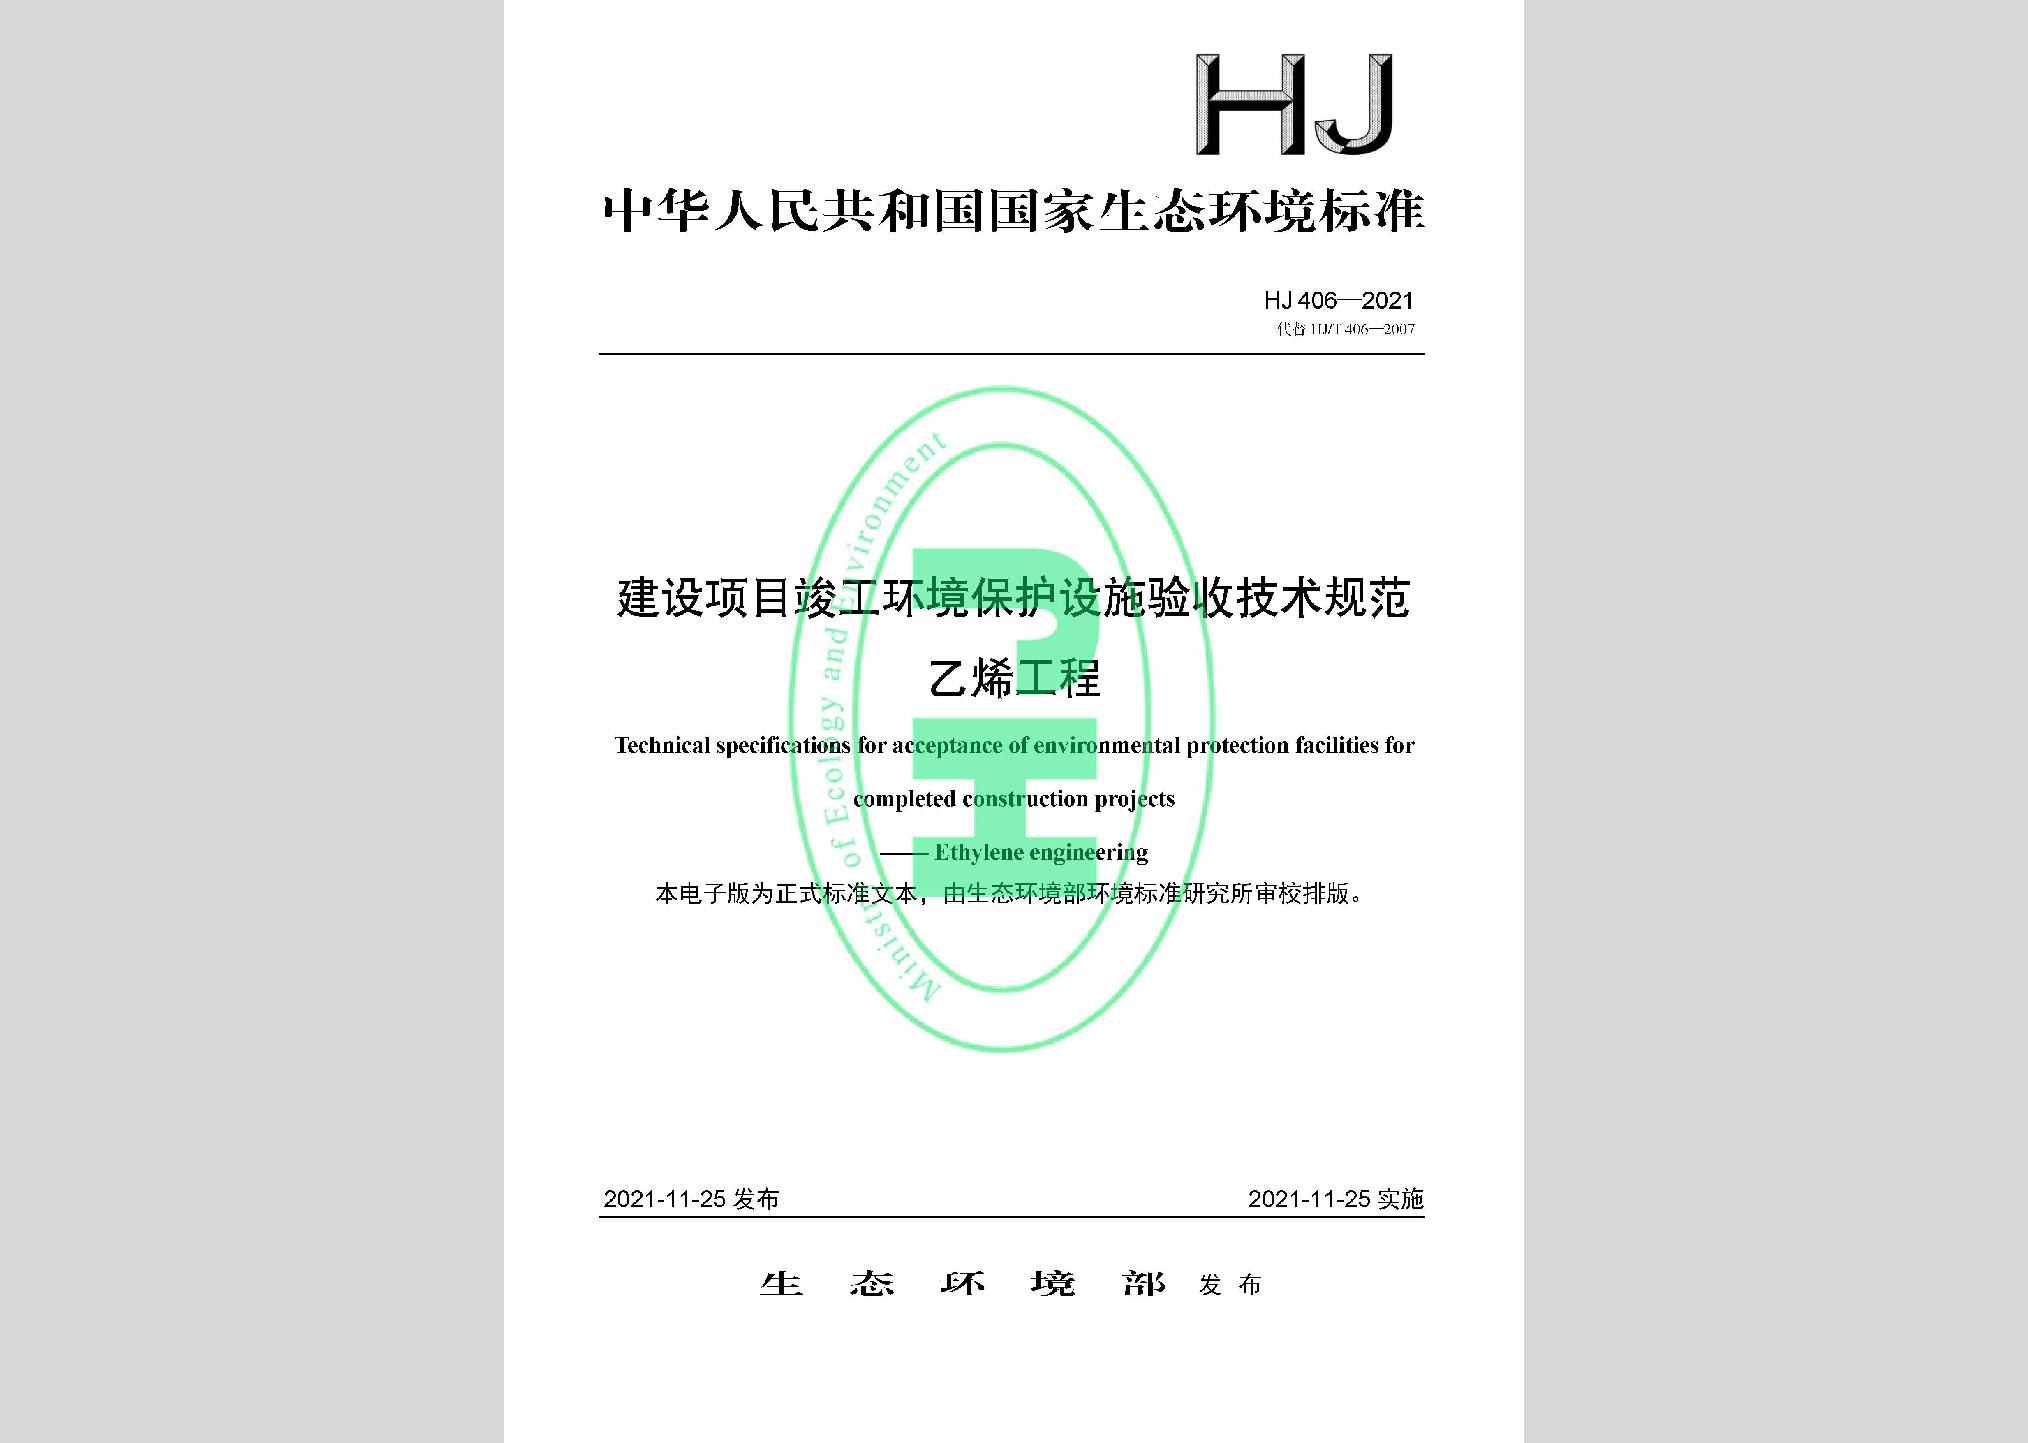 HJ406-2021：建设项目竣工环境保护设施验收技术规范乙烯工程